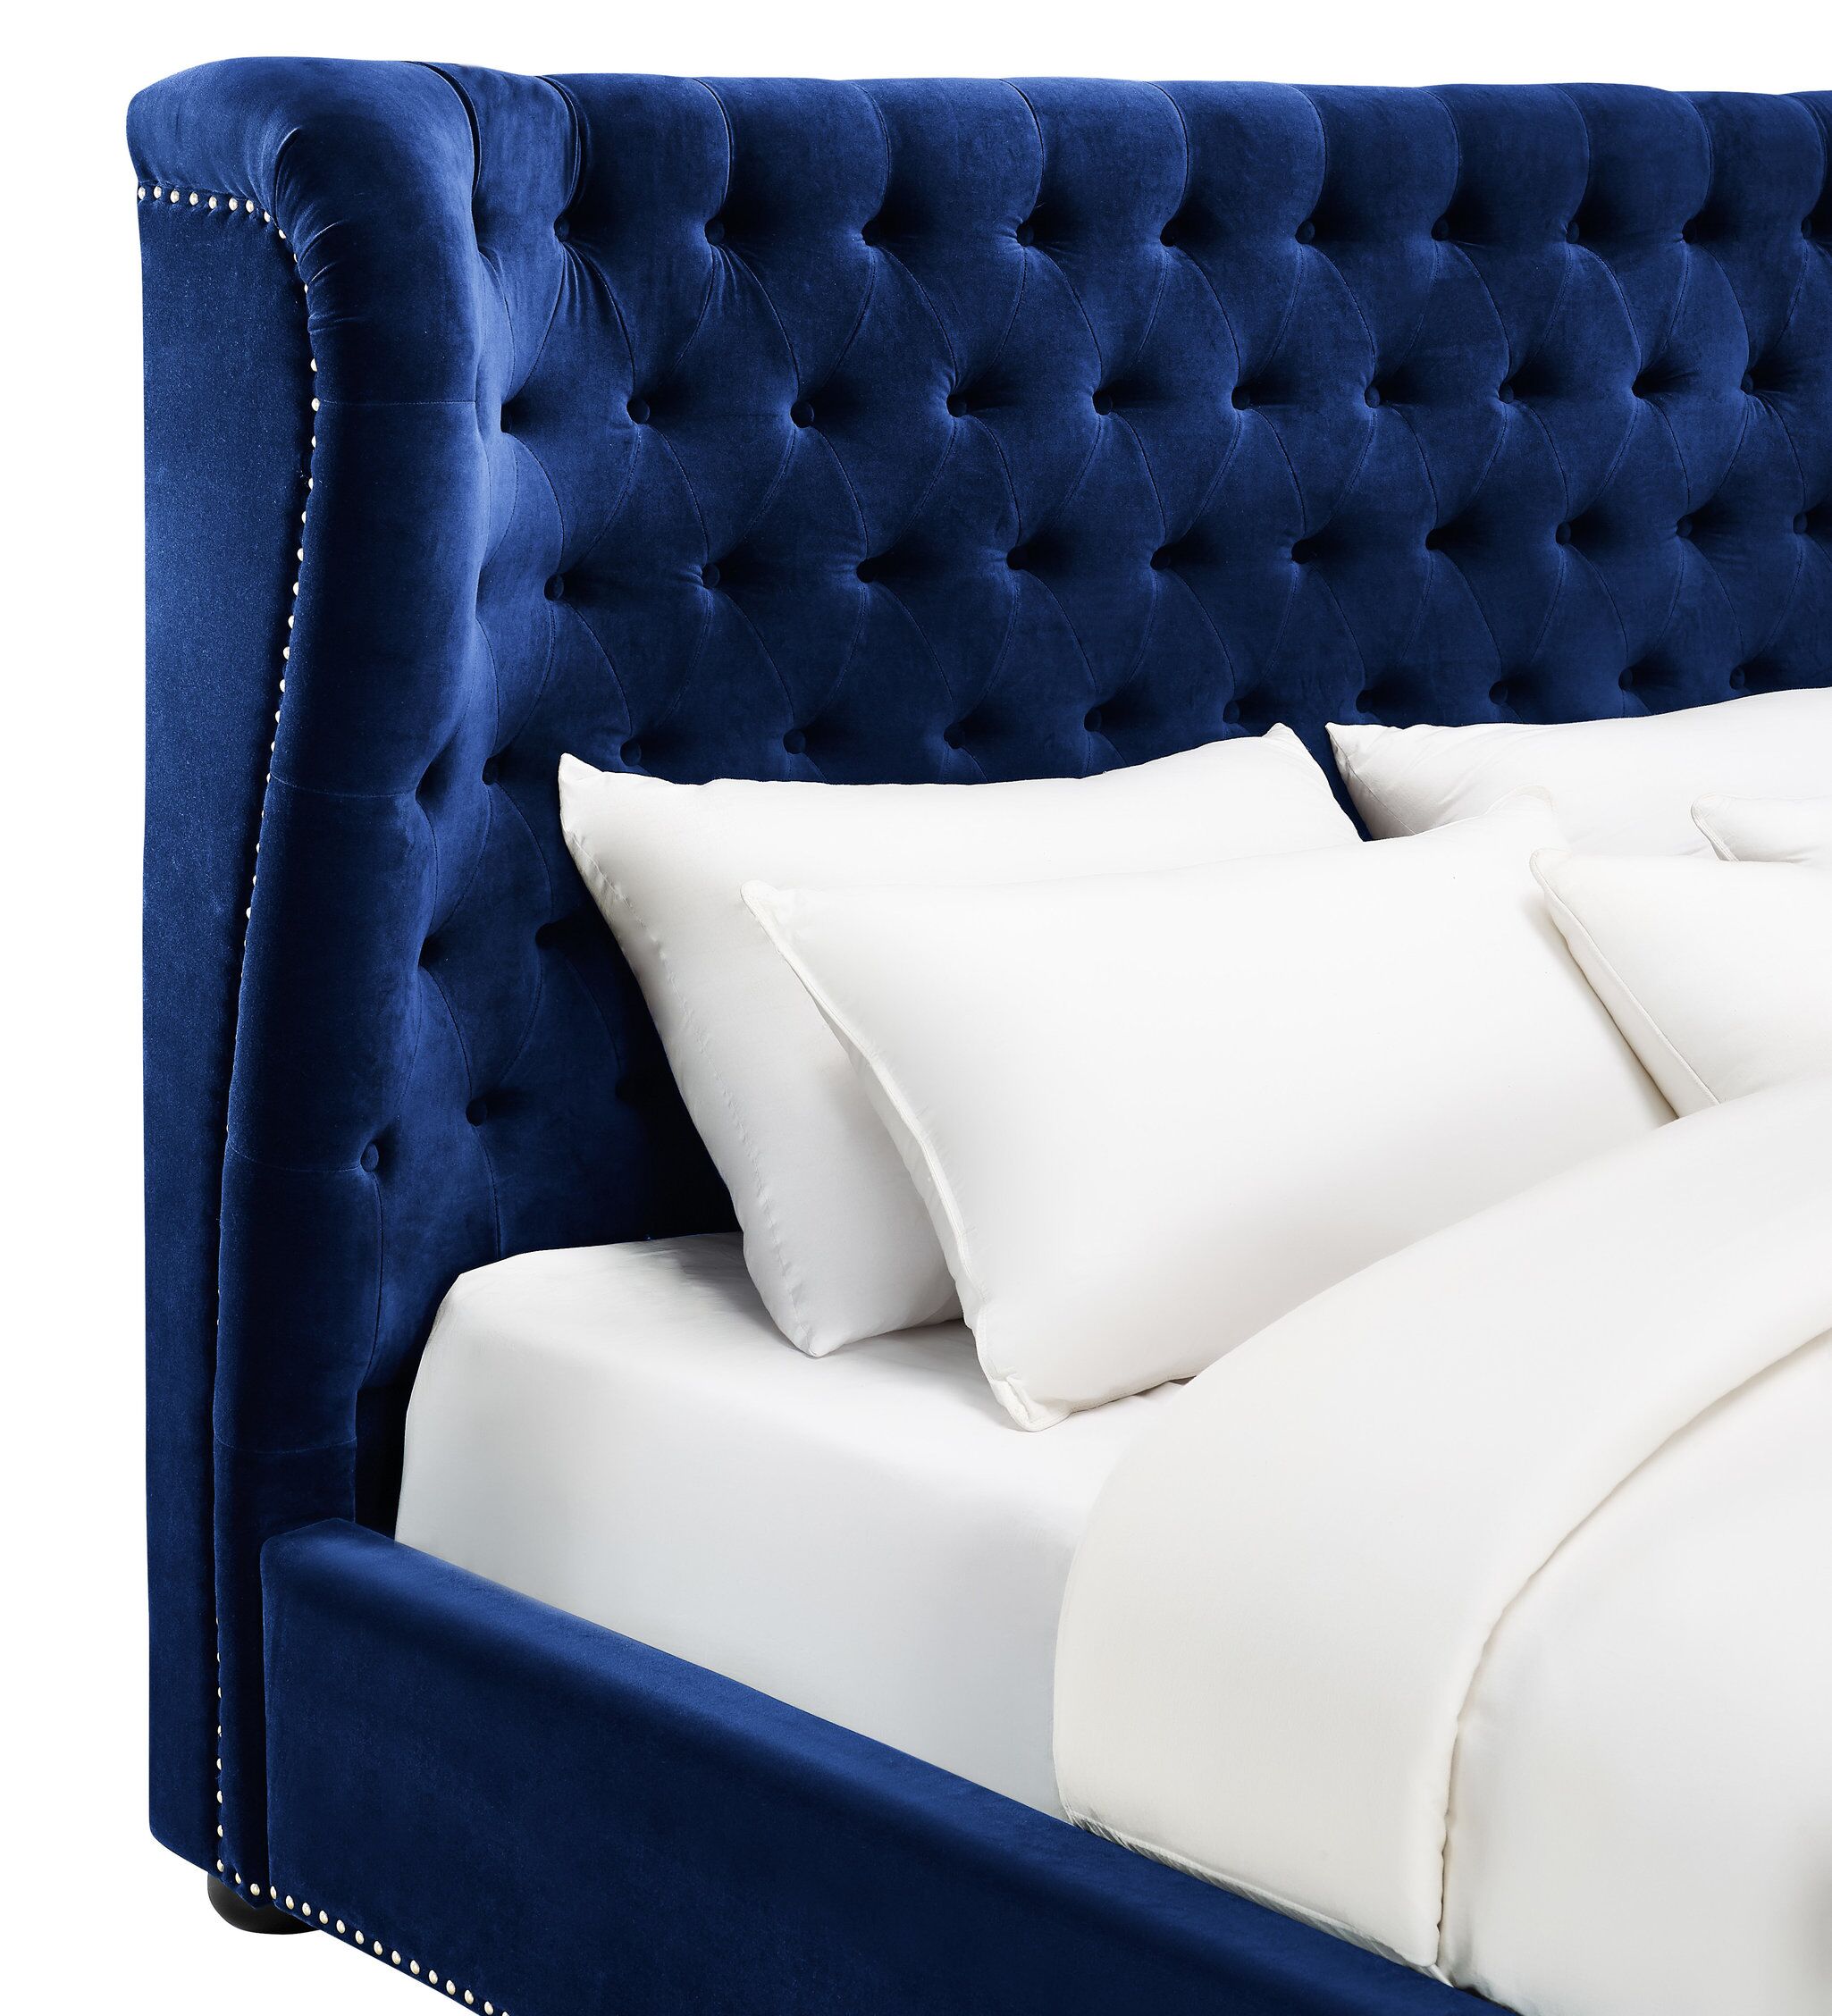 Мягкий двухместный. Кровать слипсон 140 Velvet Navy Blue. Кровать Клифтон Velvet Blue. Кровать tov Furniture Reed Navy Velvet Tufted. Синяя кровать вельвет.